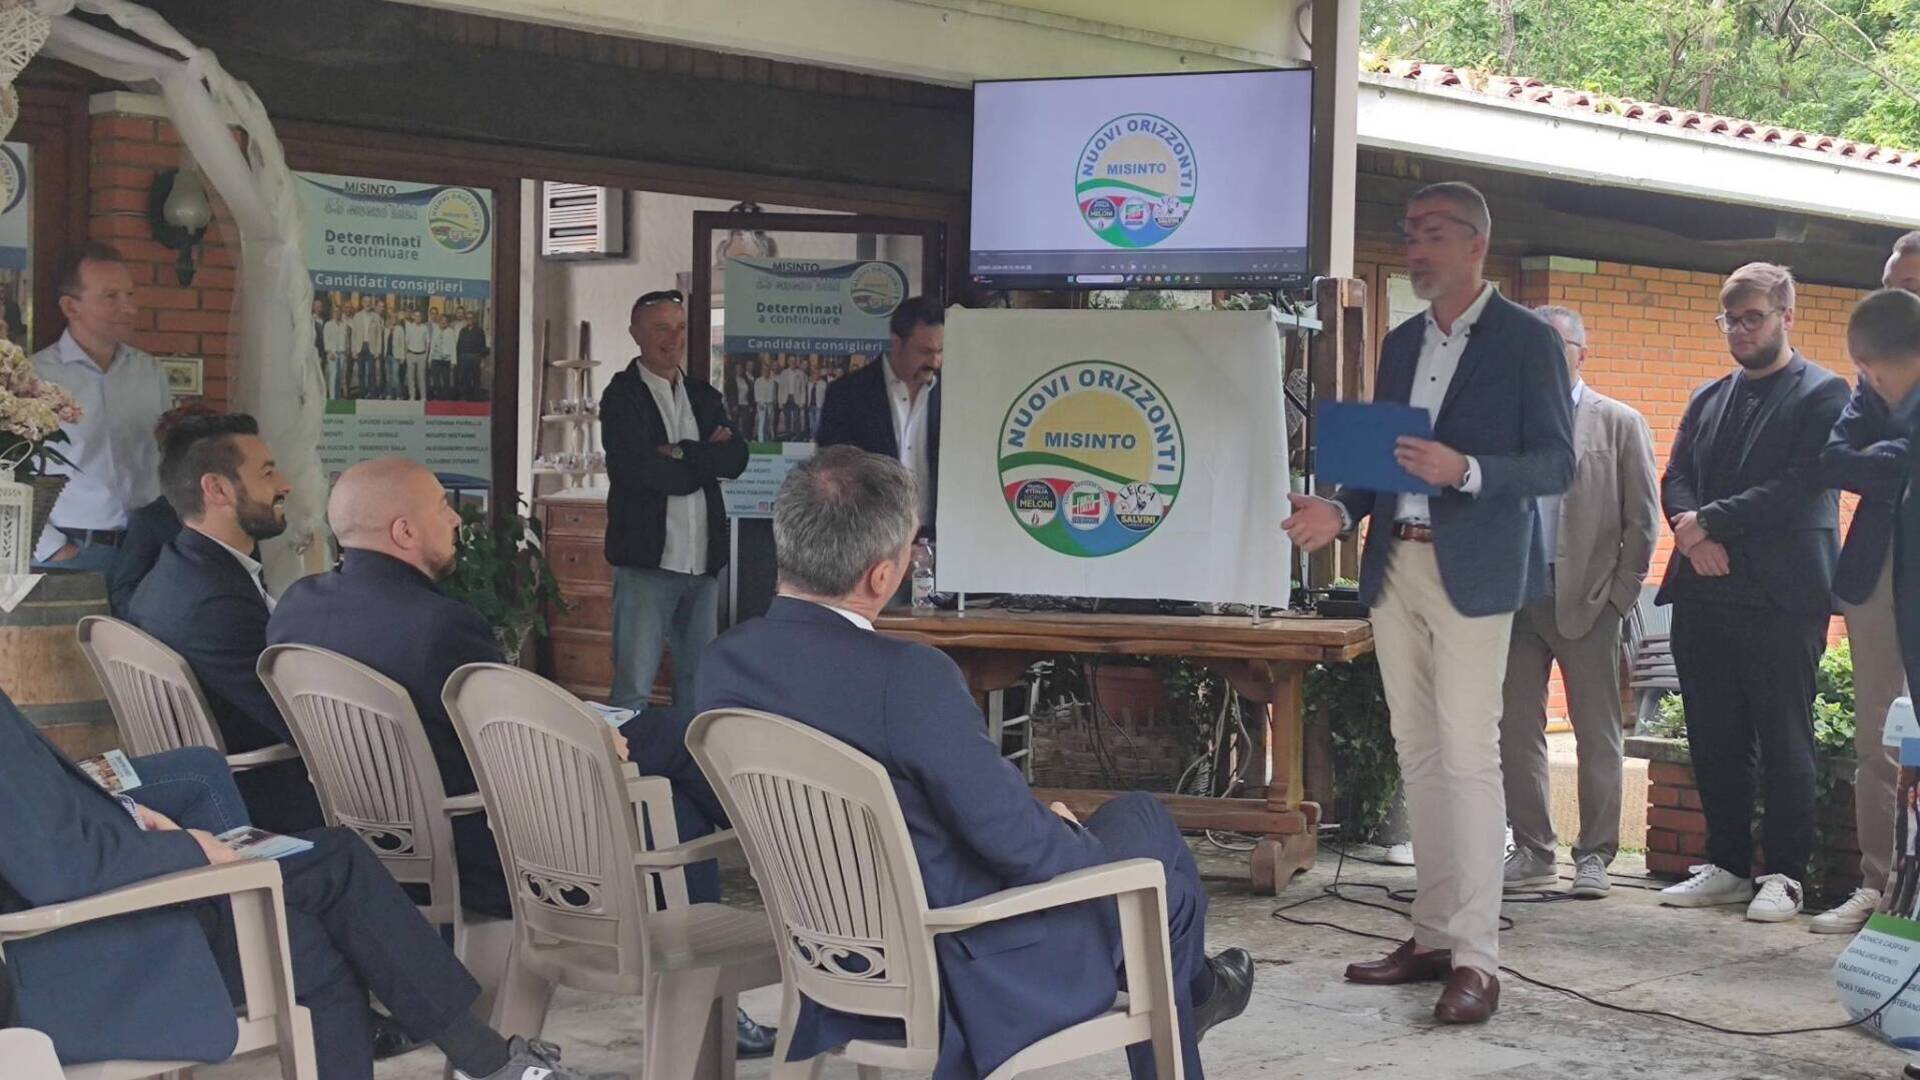 Elezioni Misinto, il sindaco uscente Piuri presenta la sua lista: “Siamo stati un’amministrazione attenta”